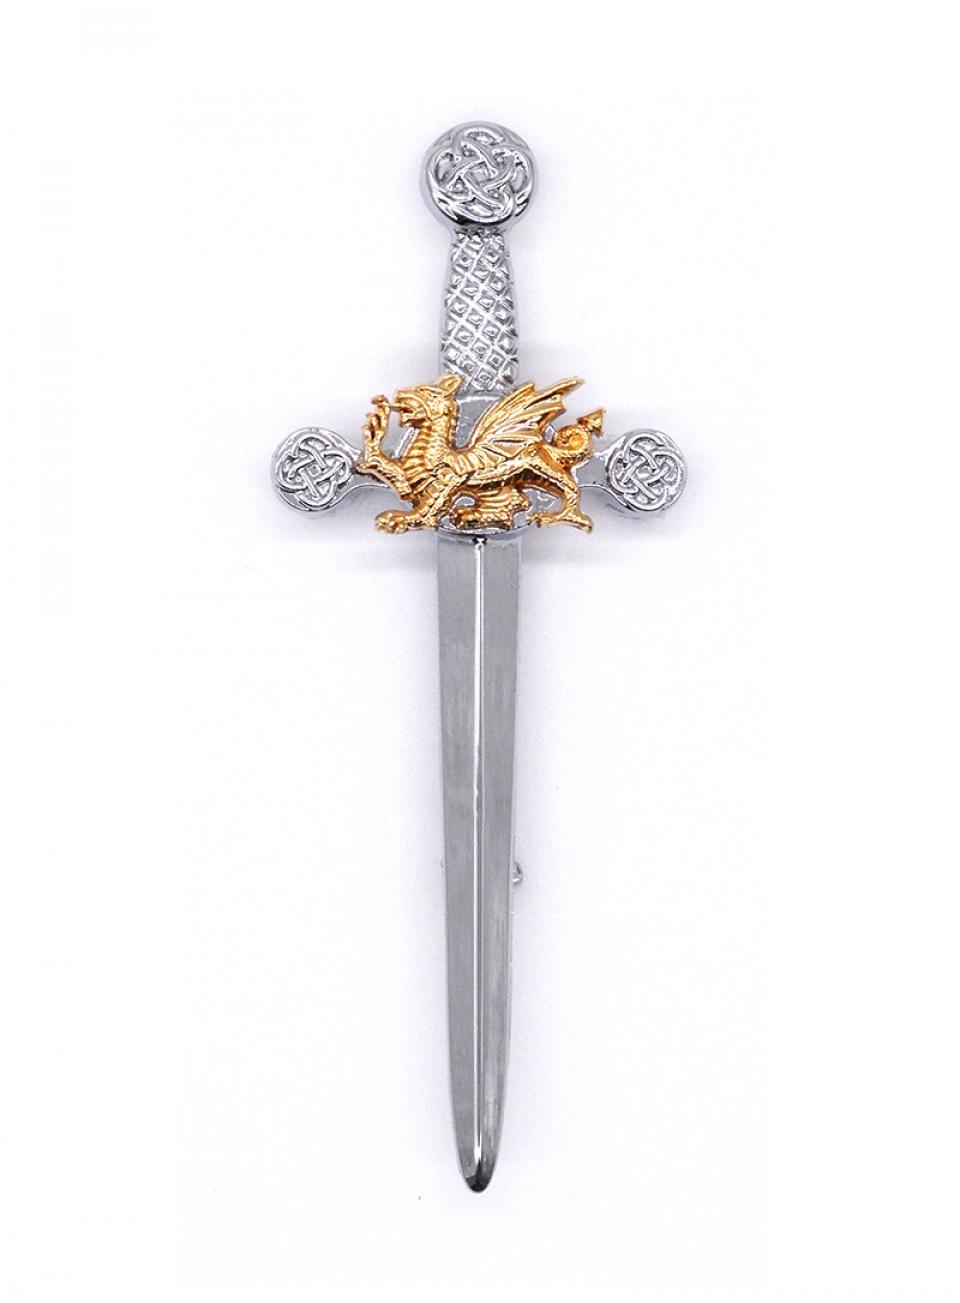 Chrome/Gold Dragon Sword Kilt Pin